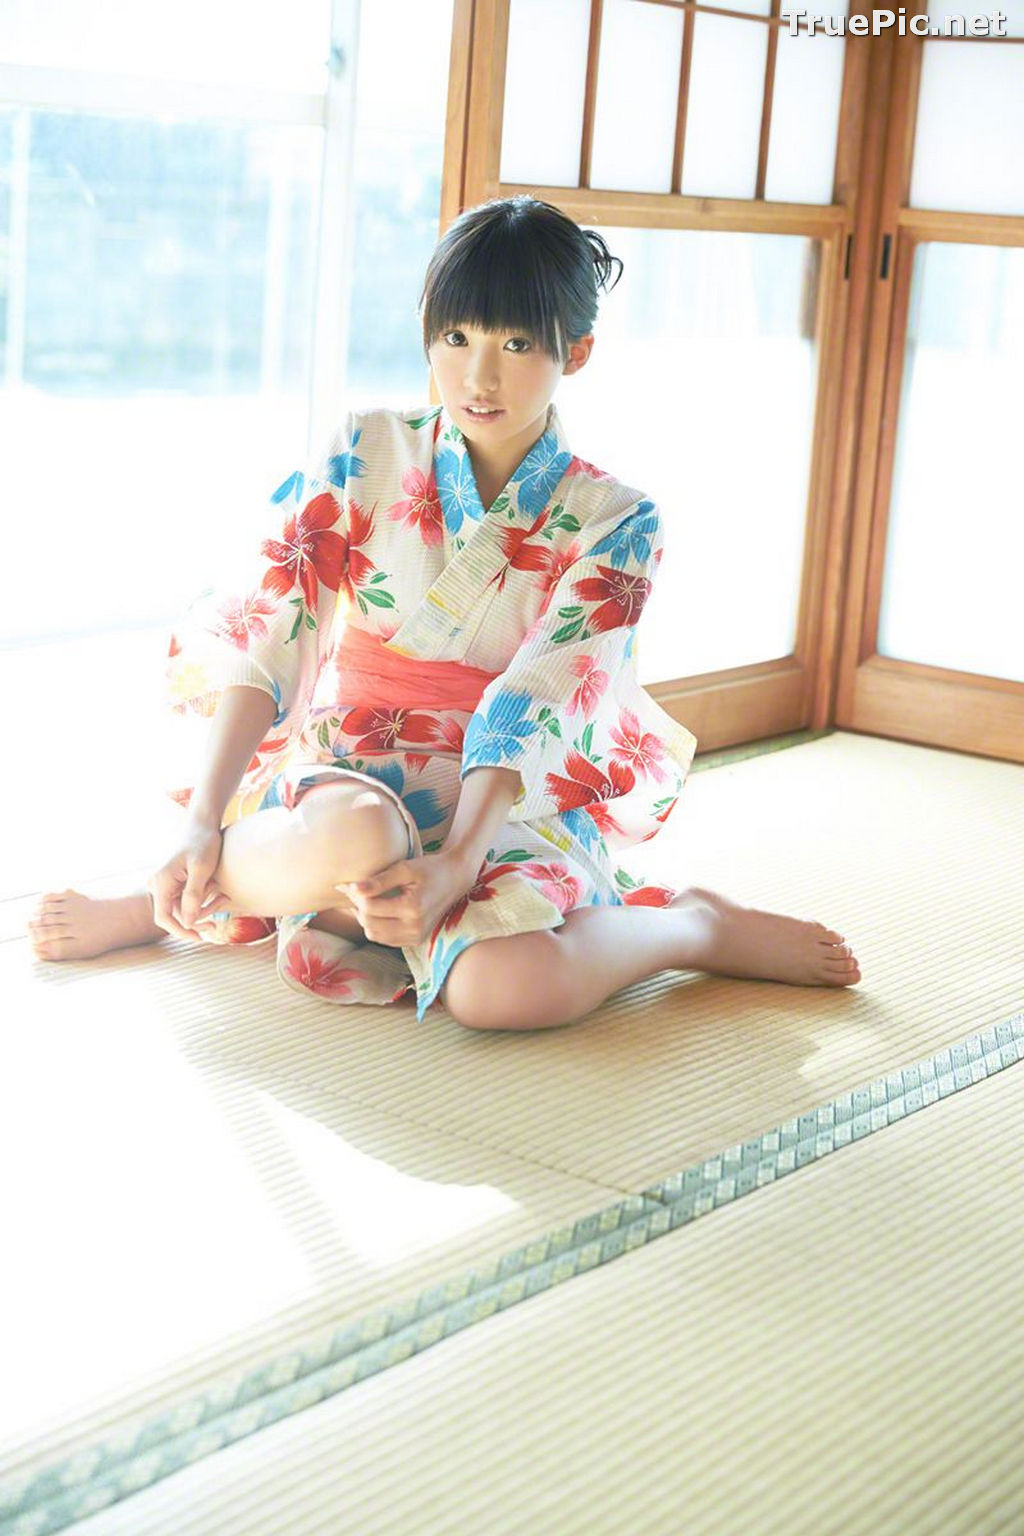 Image Wanibooks No.133 - Japanese Model and Singer - Hikari Shiina - TruePic.net - Picture-41